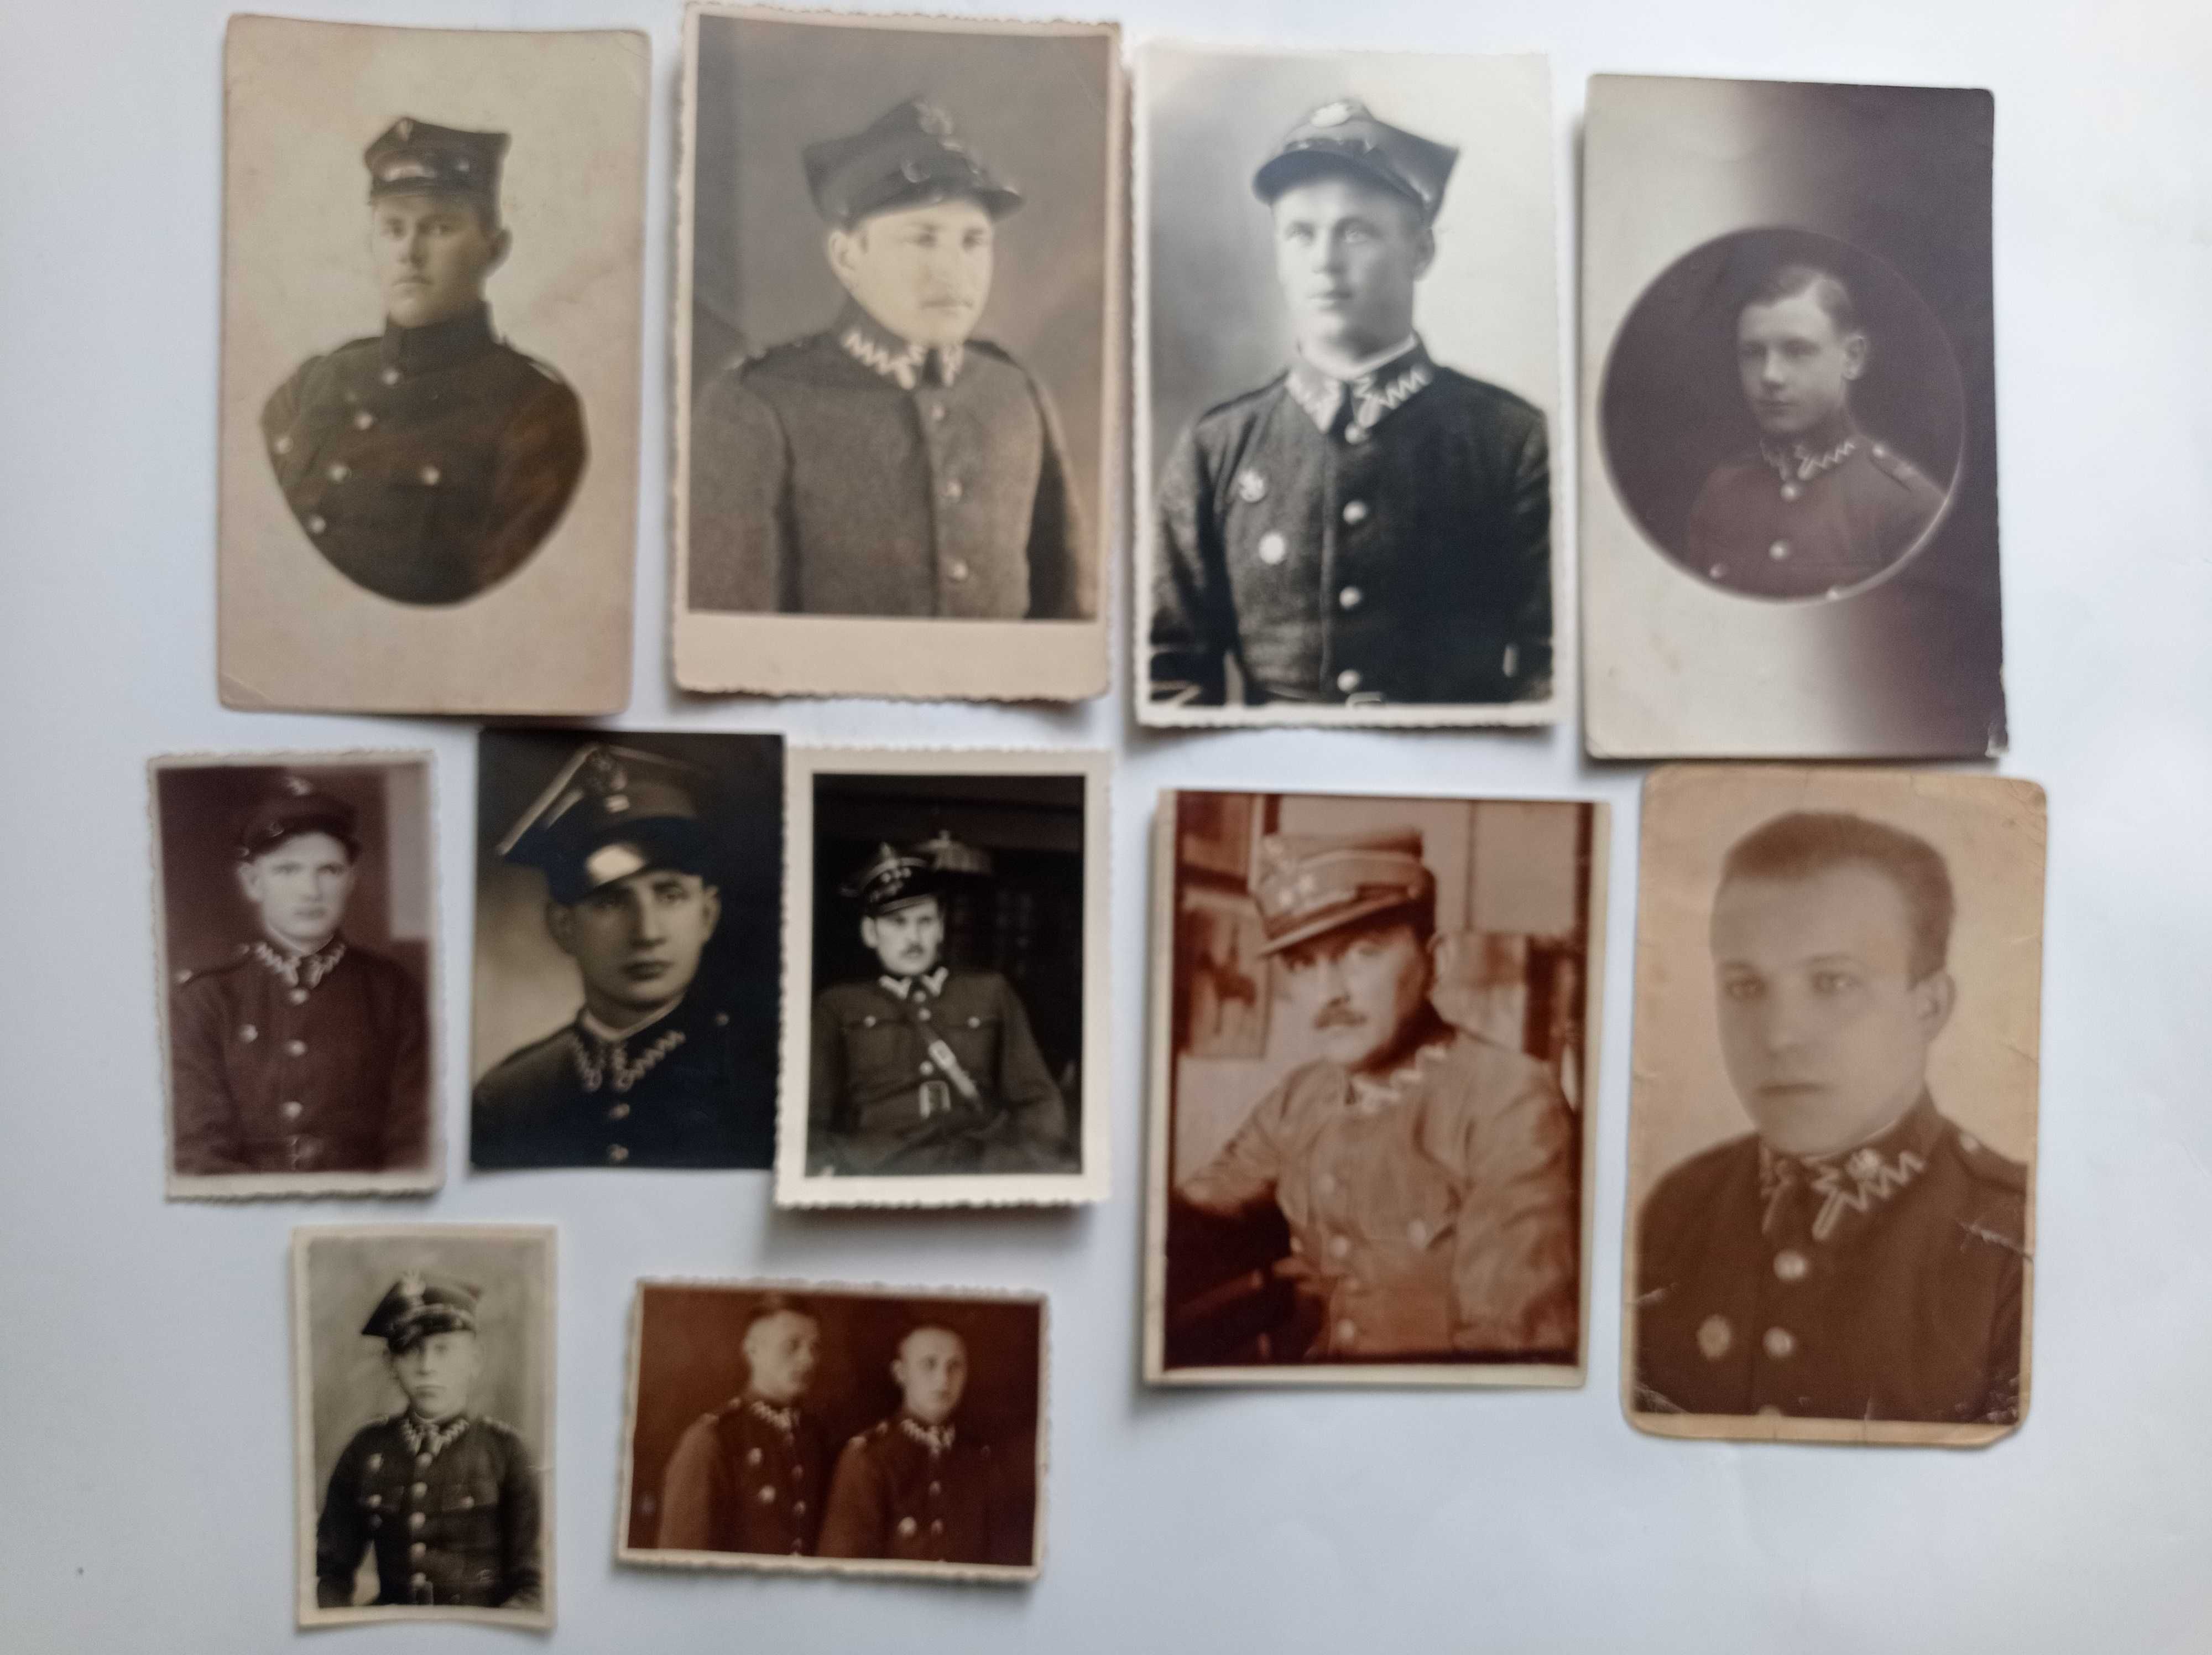 Żołnierze - stare zdjęcia 1920-40 - Sosnowiec, Kraków, Dukla -11 szt.